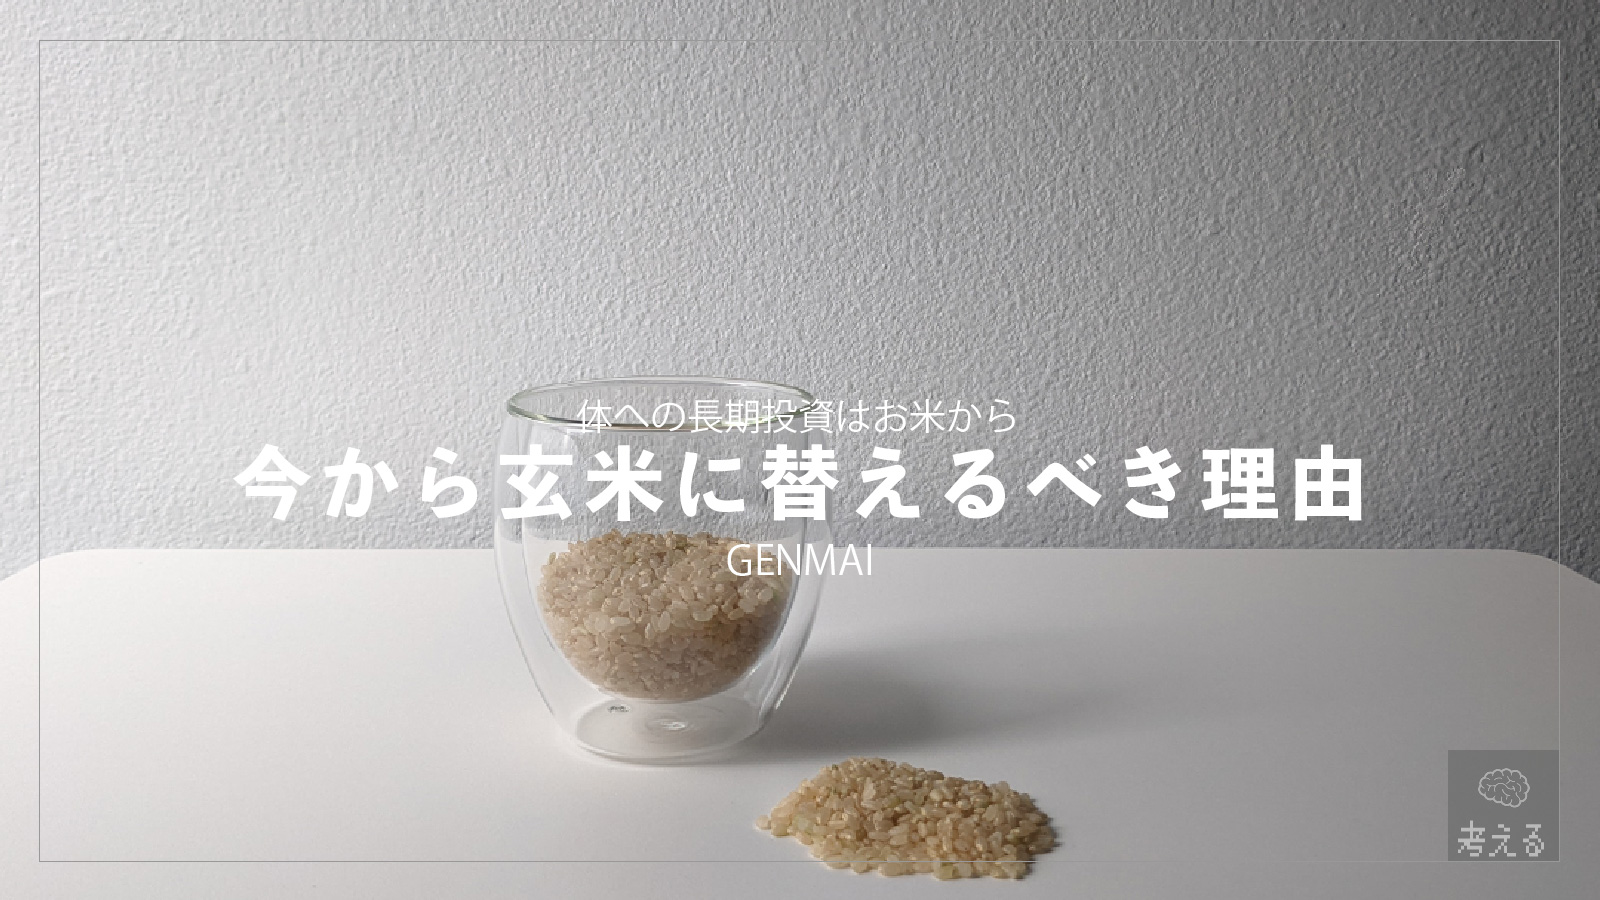 「【食改革】ミニマリストが玄米を主食にするべきと思ったきっかけと選んだもの」のアイキャッチ画像